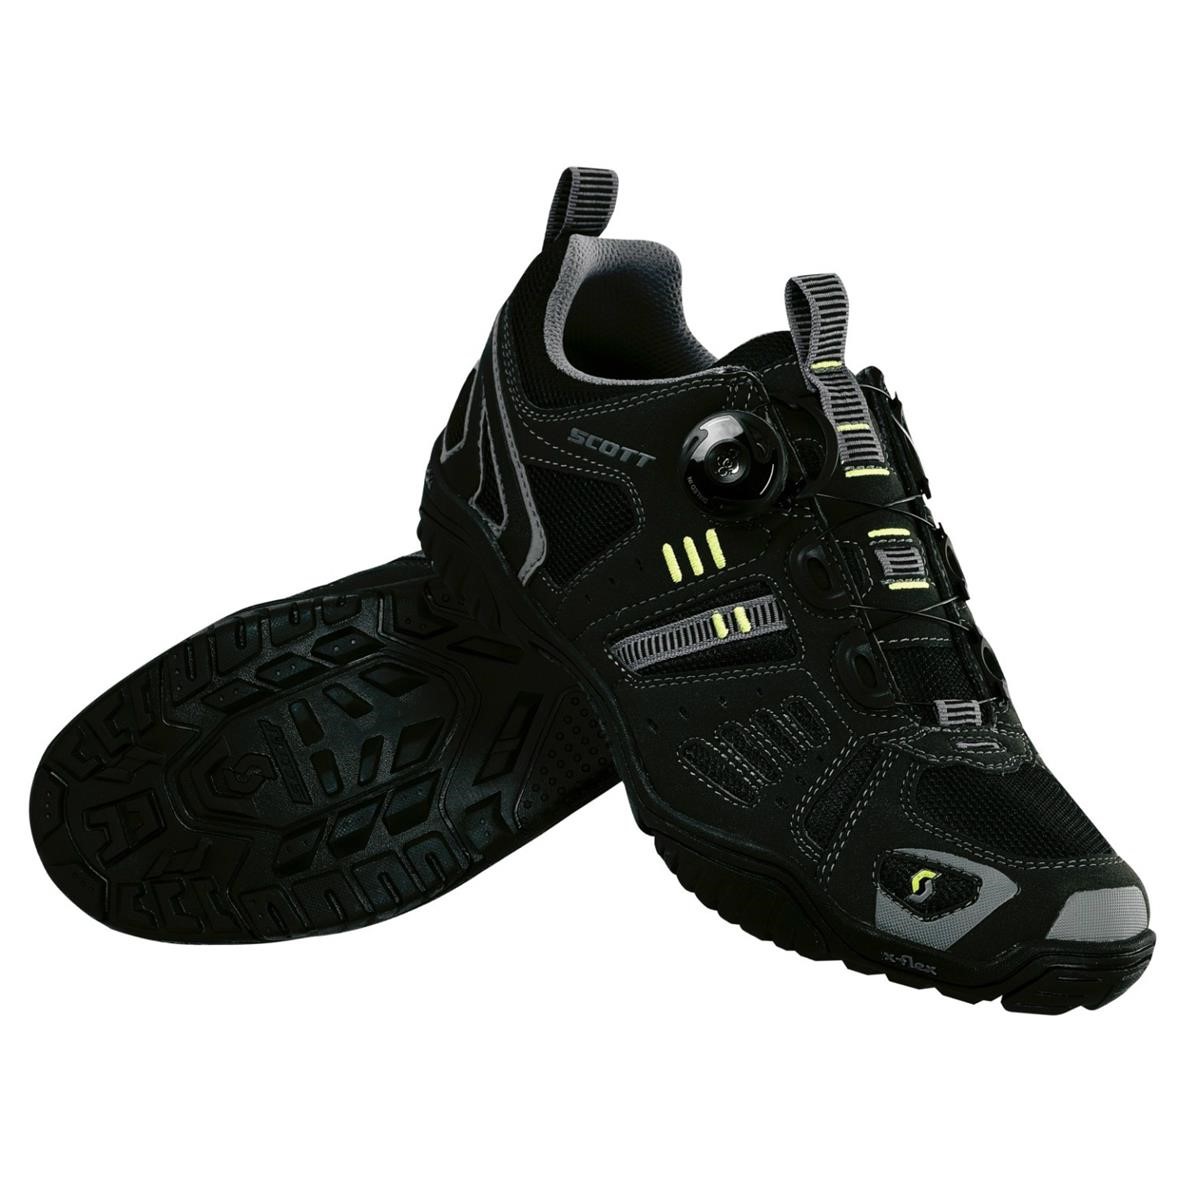 Scott Chaussures VTT Trail Boa Black